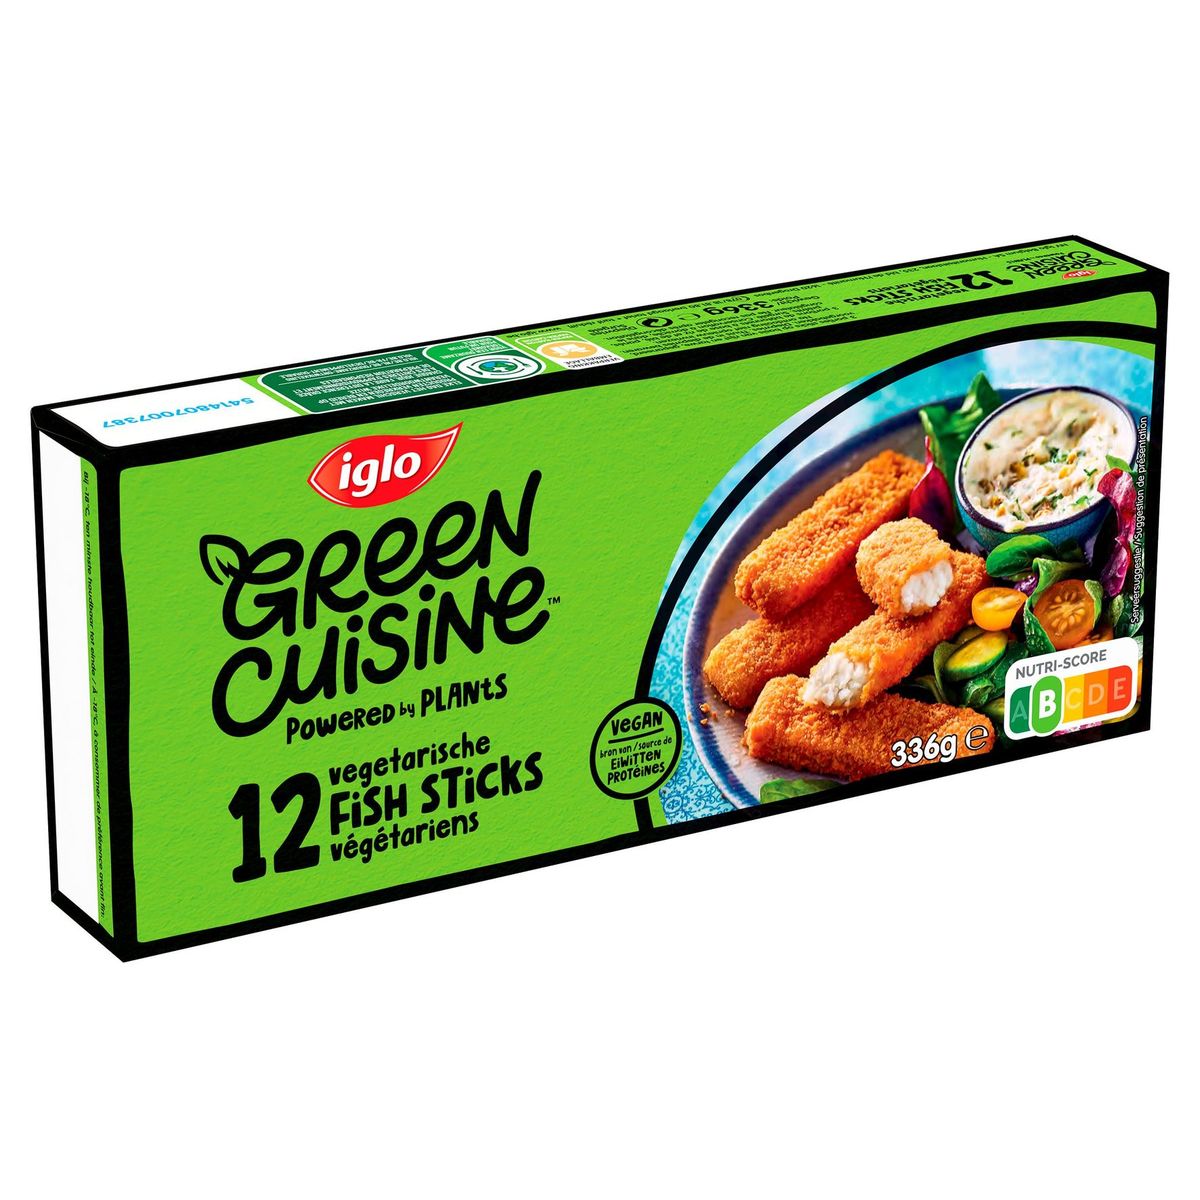 iglo Green Cuisine 12 Vegetarische Fish Sticks 336 g